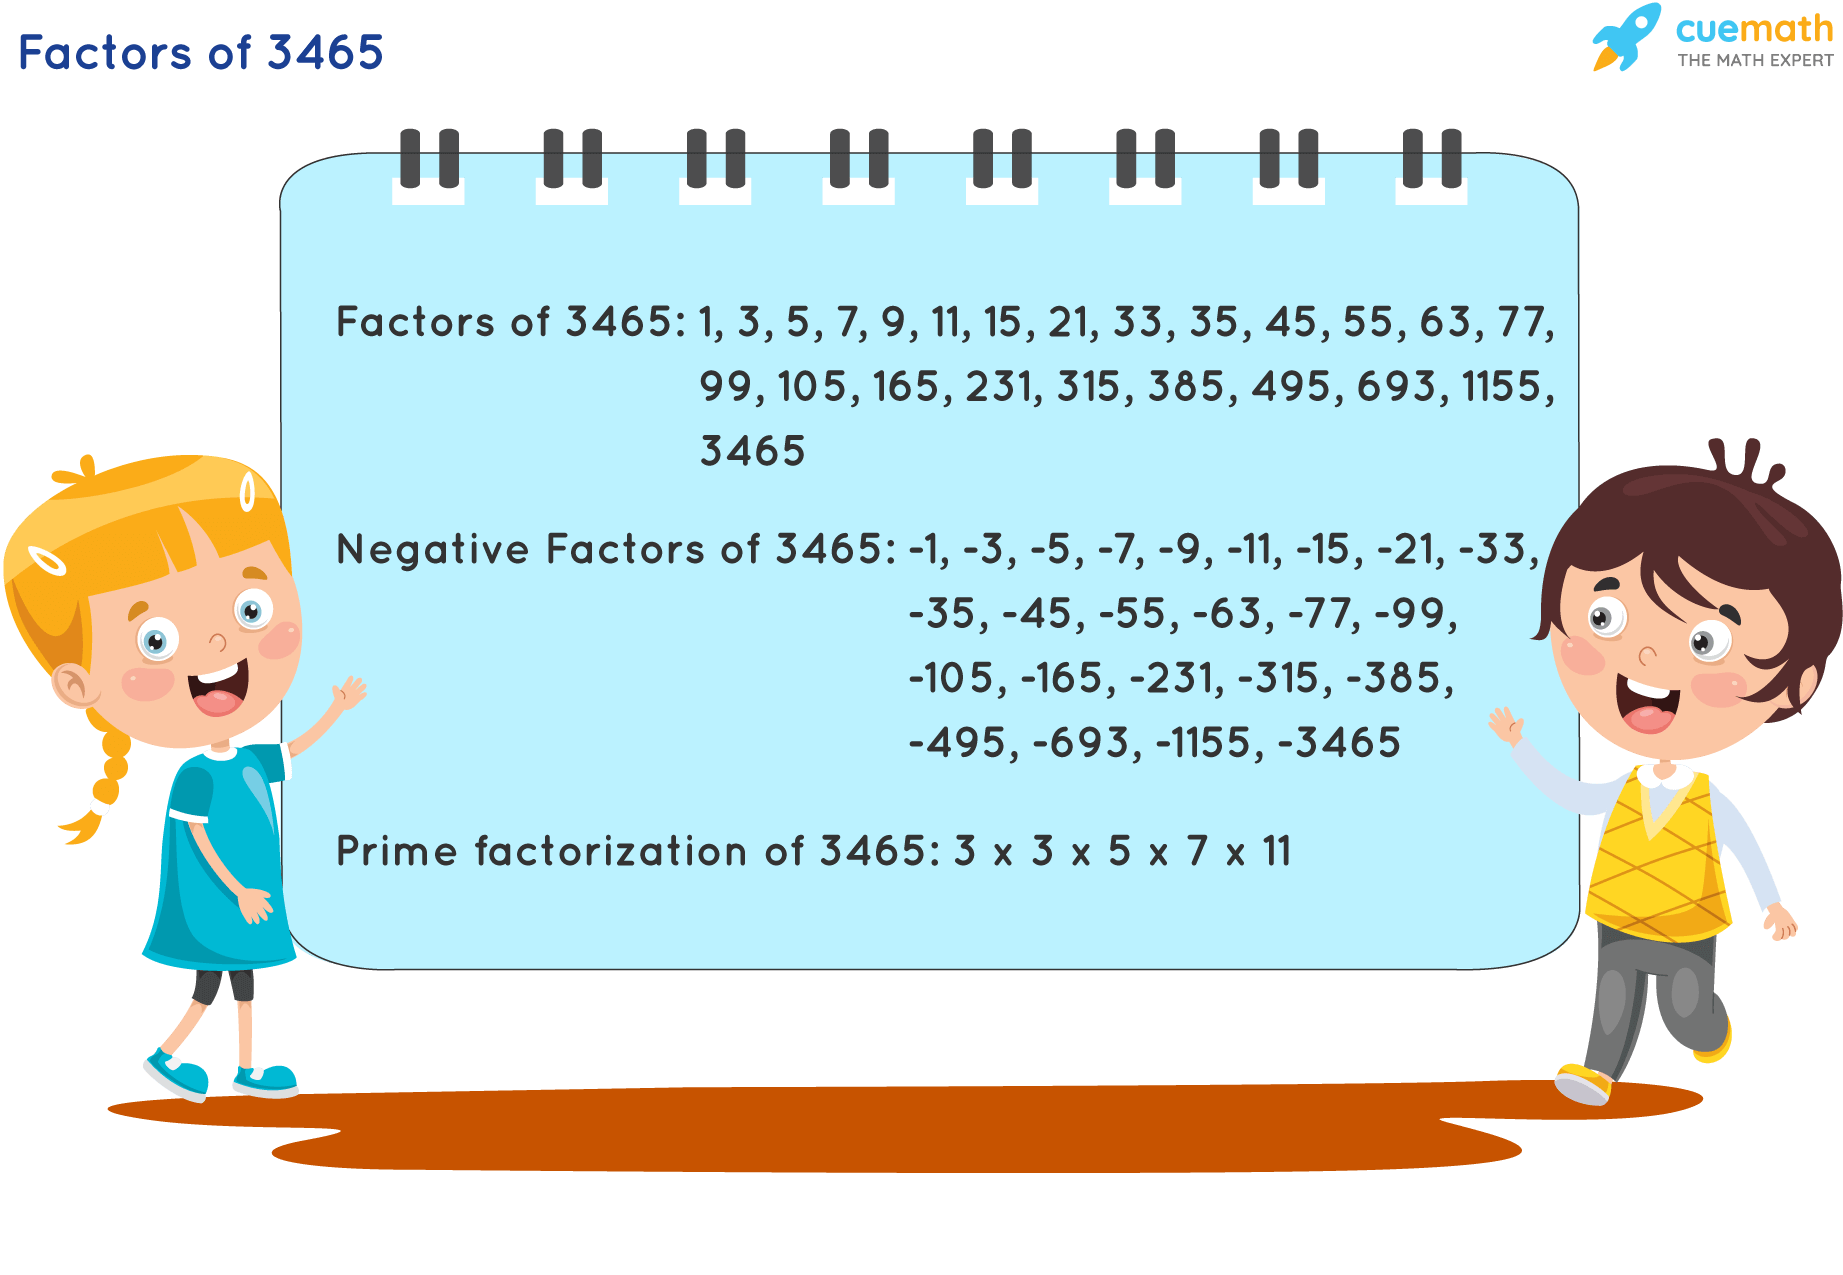 Factors of 3465